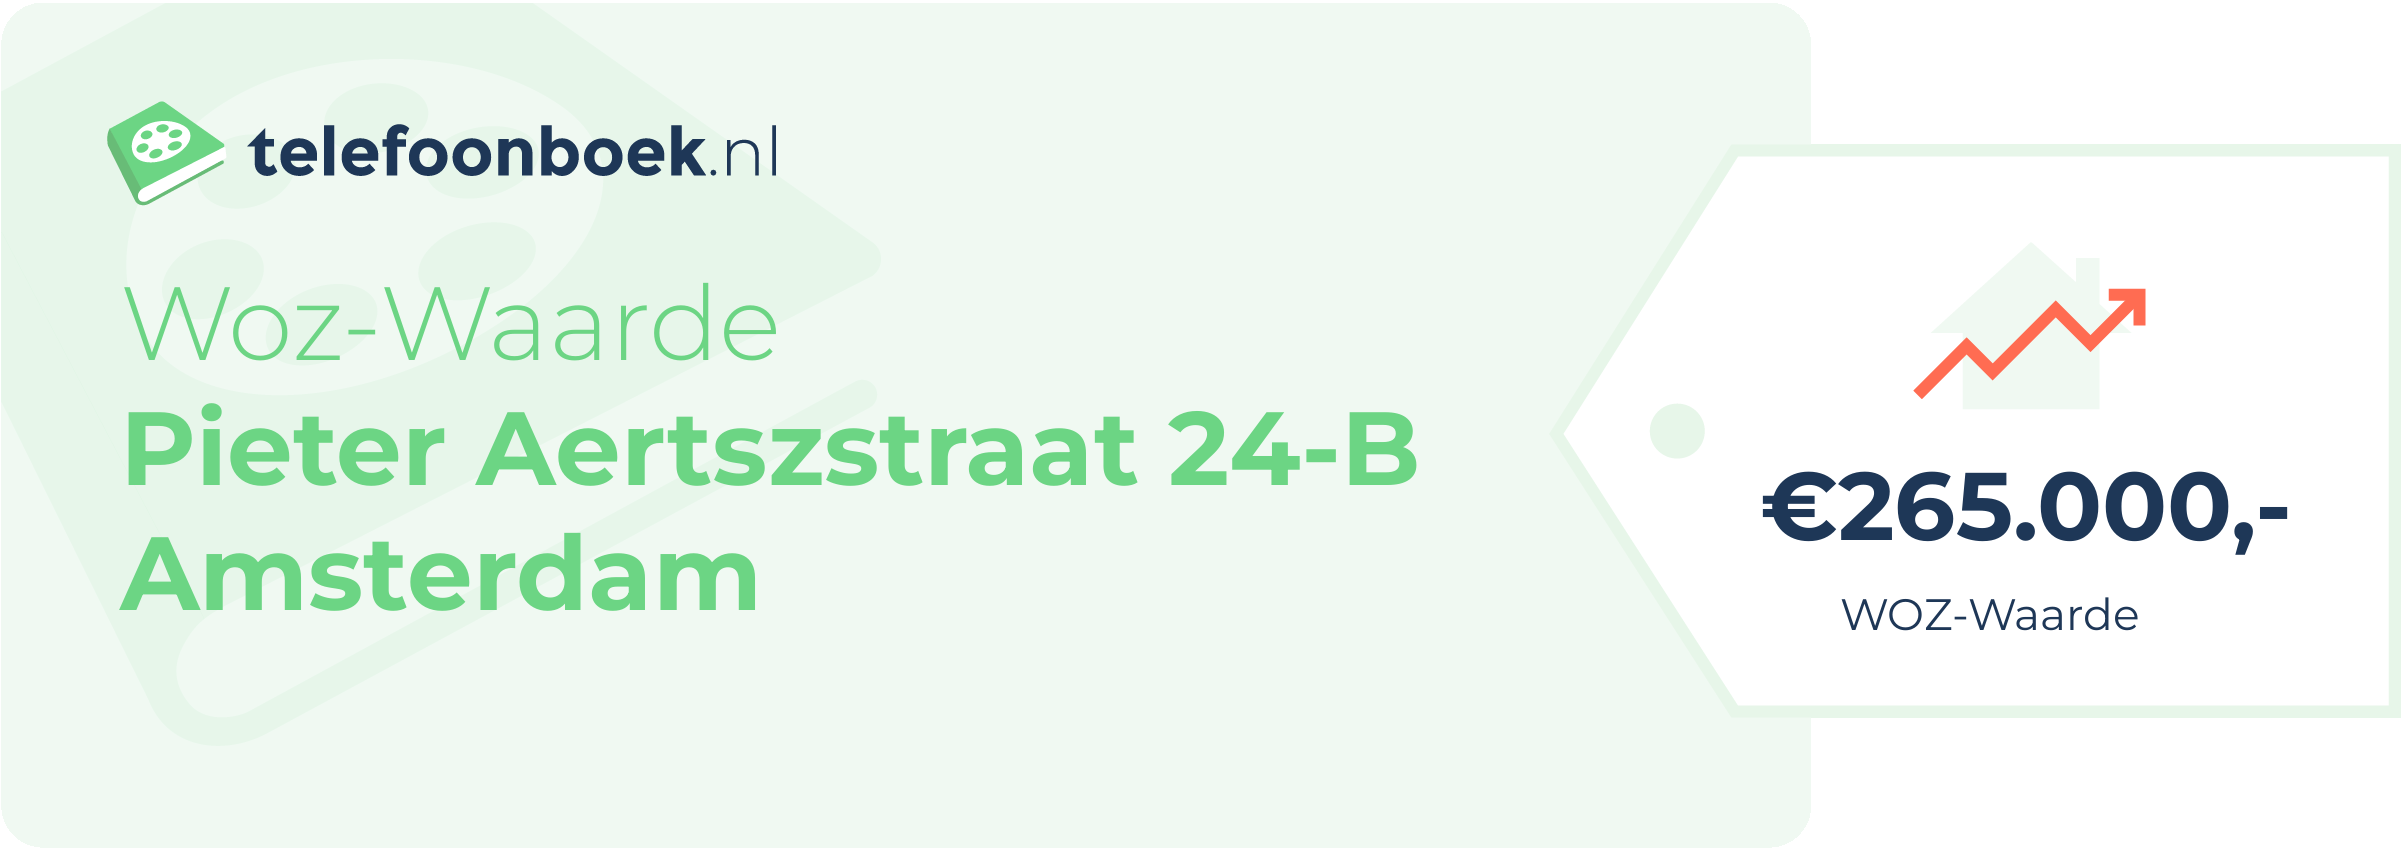 WOZ-waarde Pieter Aertszstraat 24-B Amsterdam